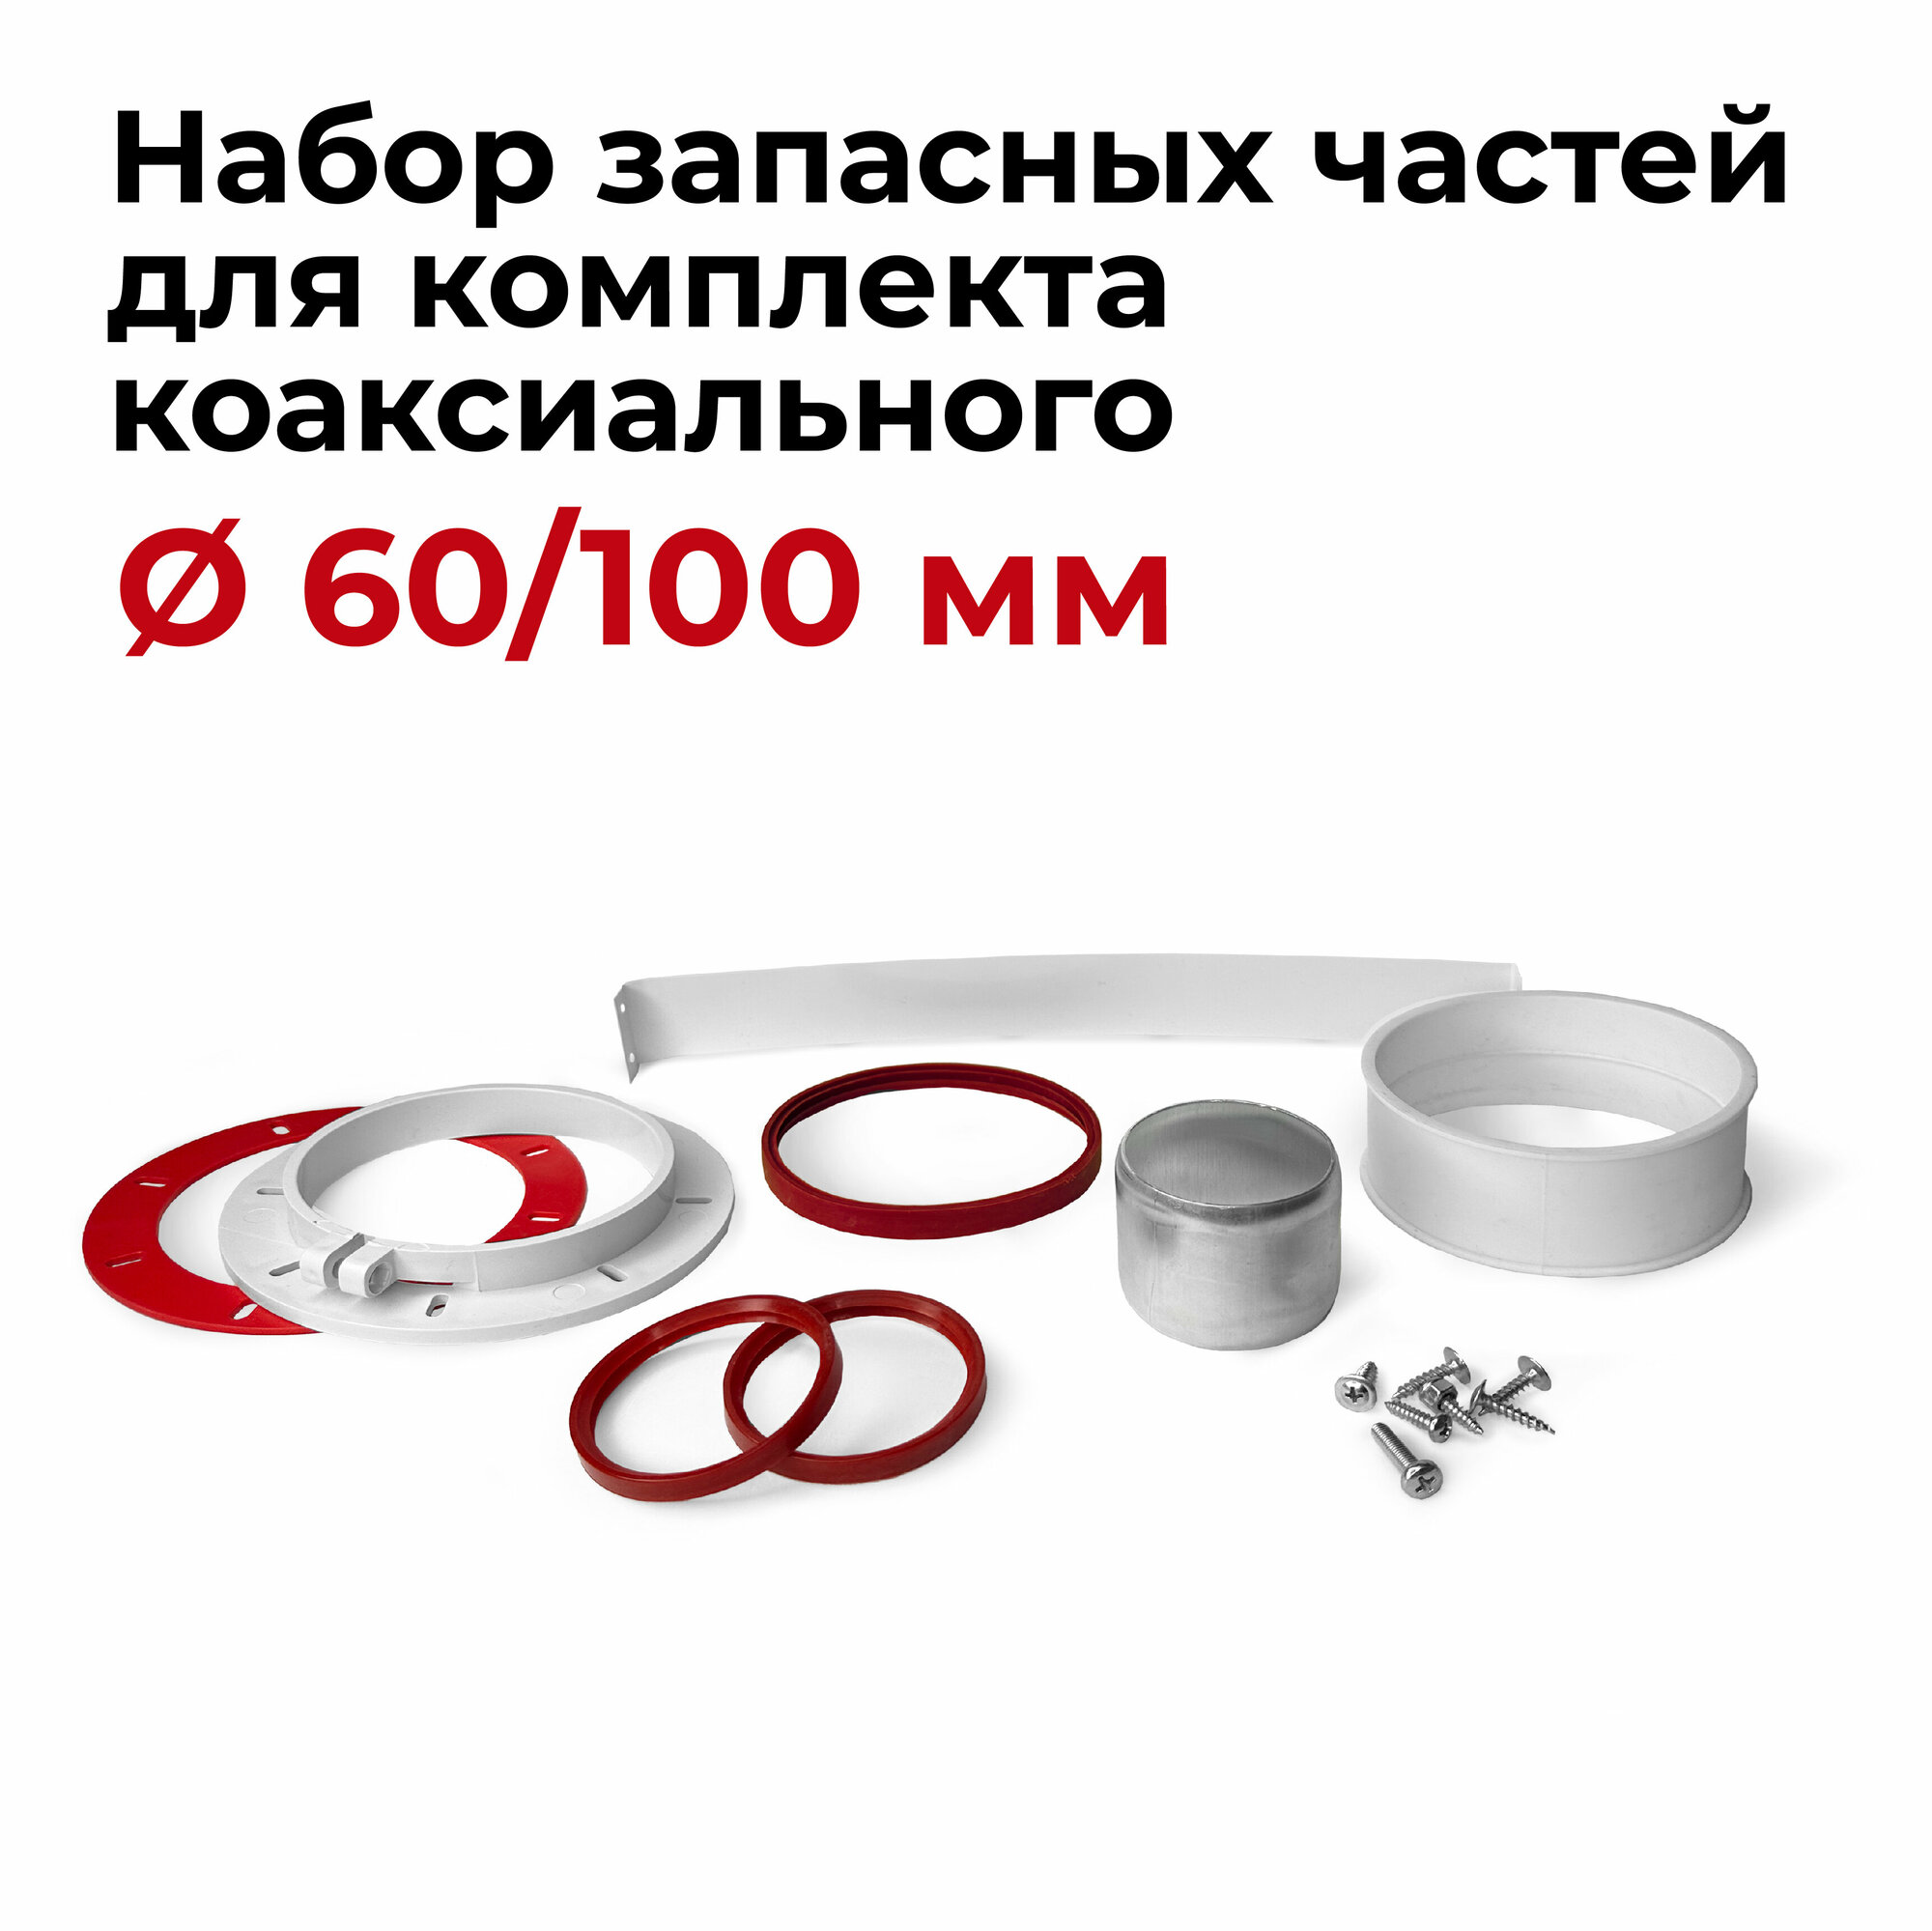 Набор запасных частей для комплекта коаксиального 60/100 мм "Прок"